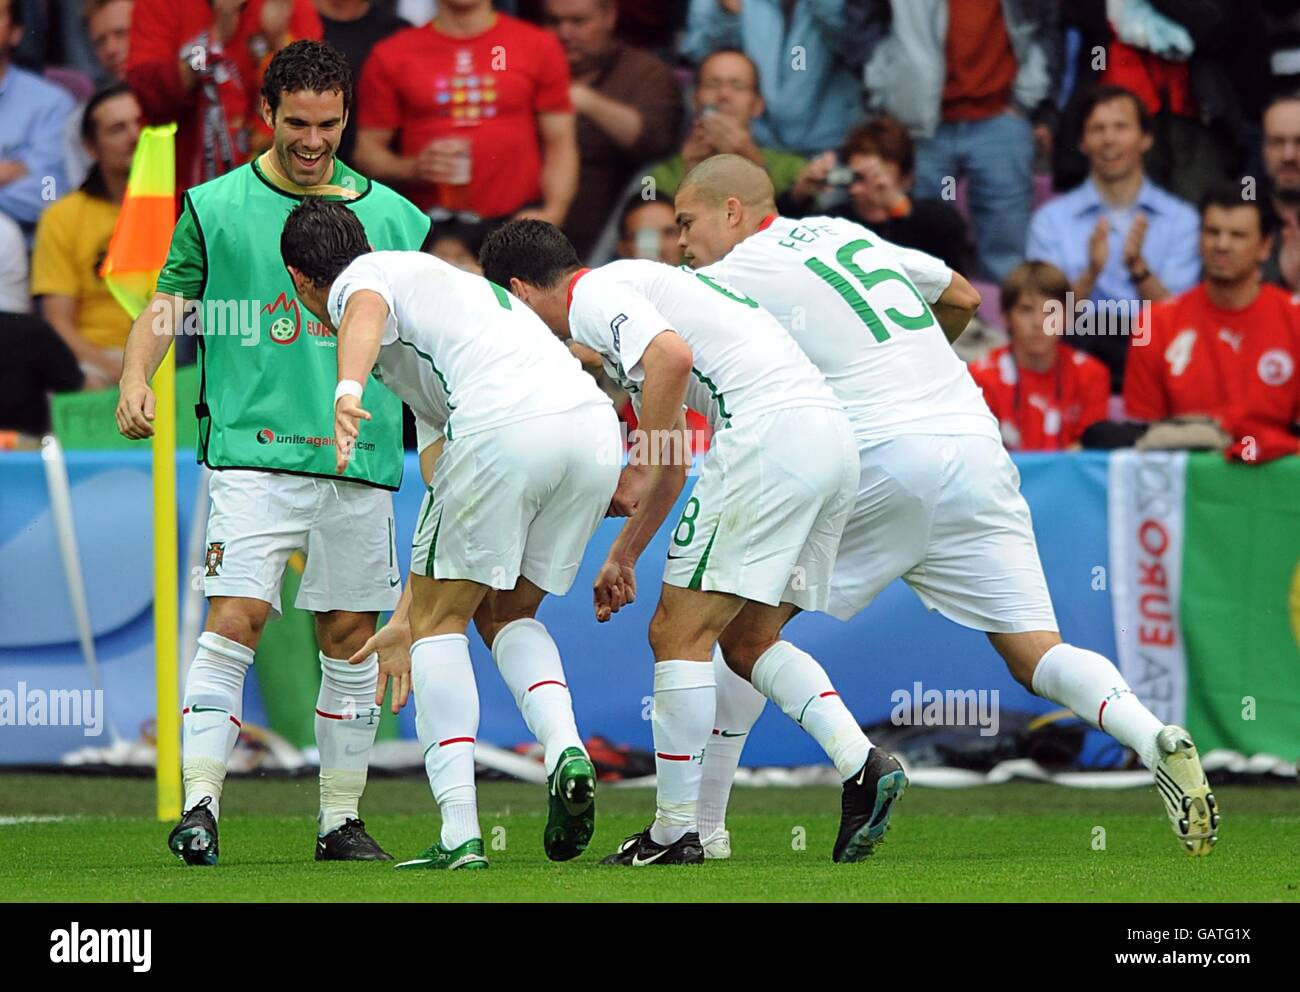 Calcio - Campionato europeo UEFA 2008 - Gruppo A - Repubblica Ceca / Portogallo - Stade de Geneve. I giocatori portoghesi festeggiano dopo che Cristiano Ronaldo ha ottenuto il terzo obiettivo del gioco. Foto Stock